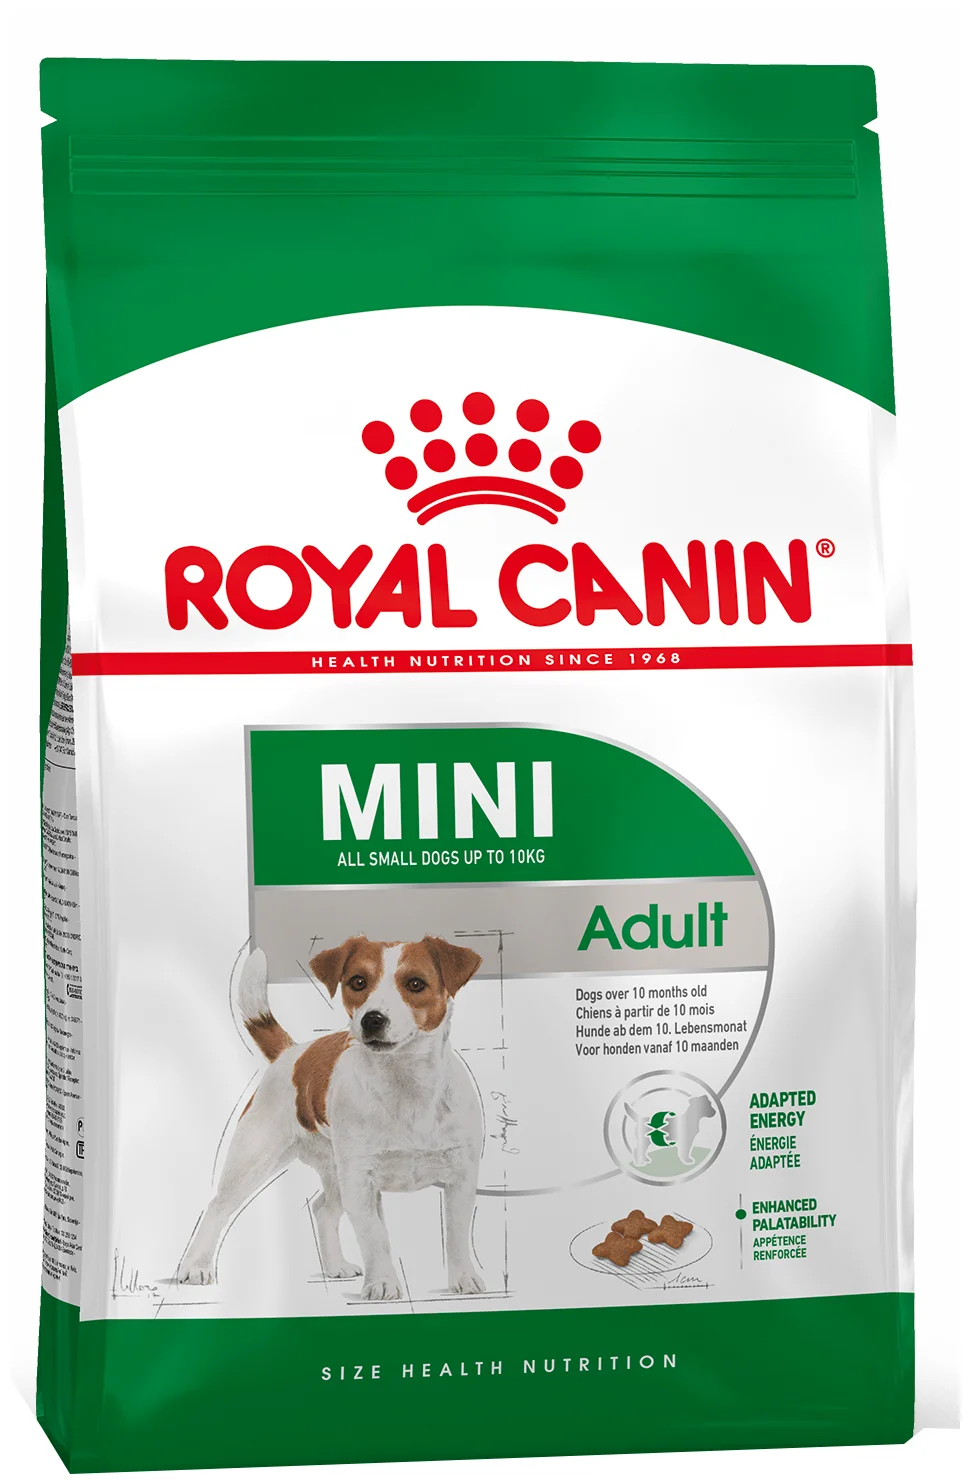 Royal Canin - возраст животного: взрослые (1-6 лет)